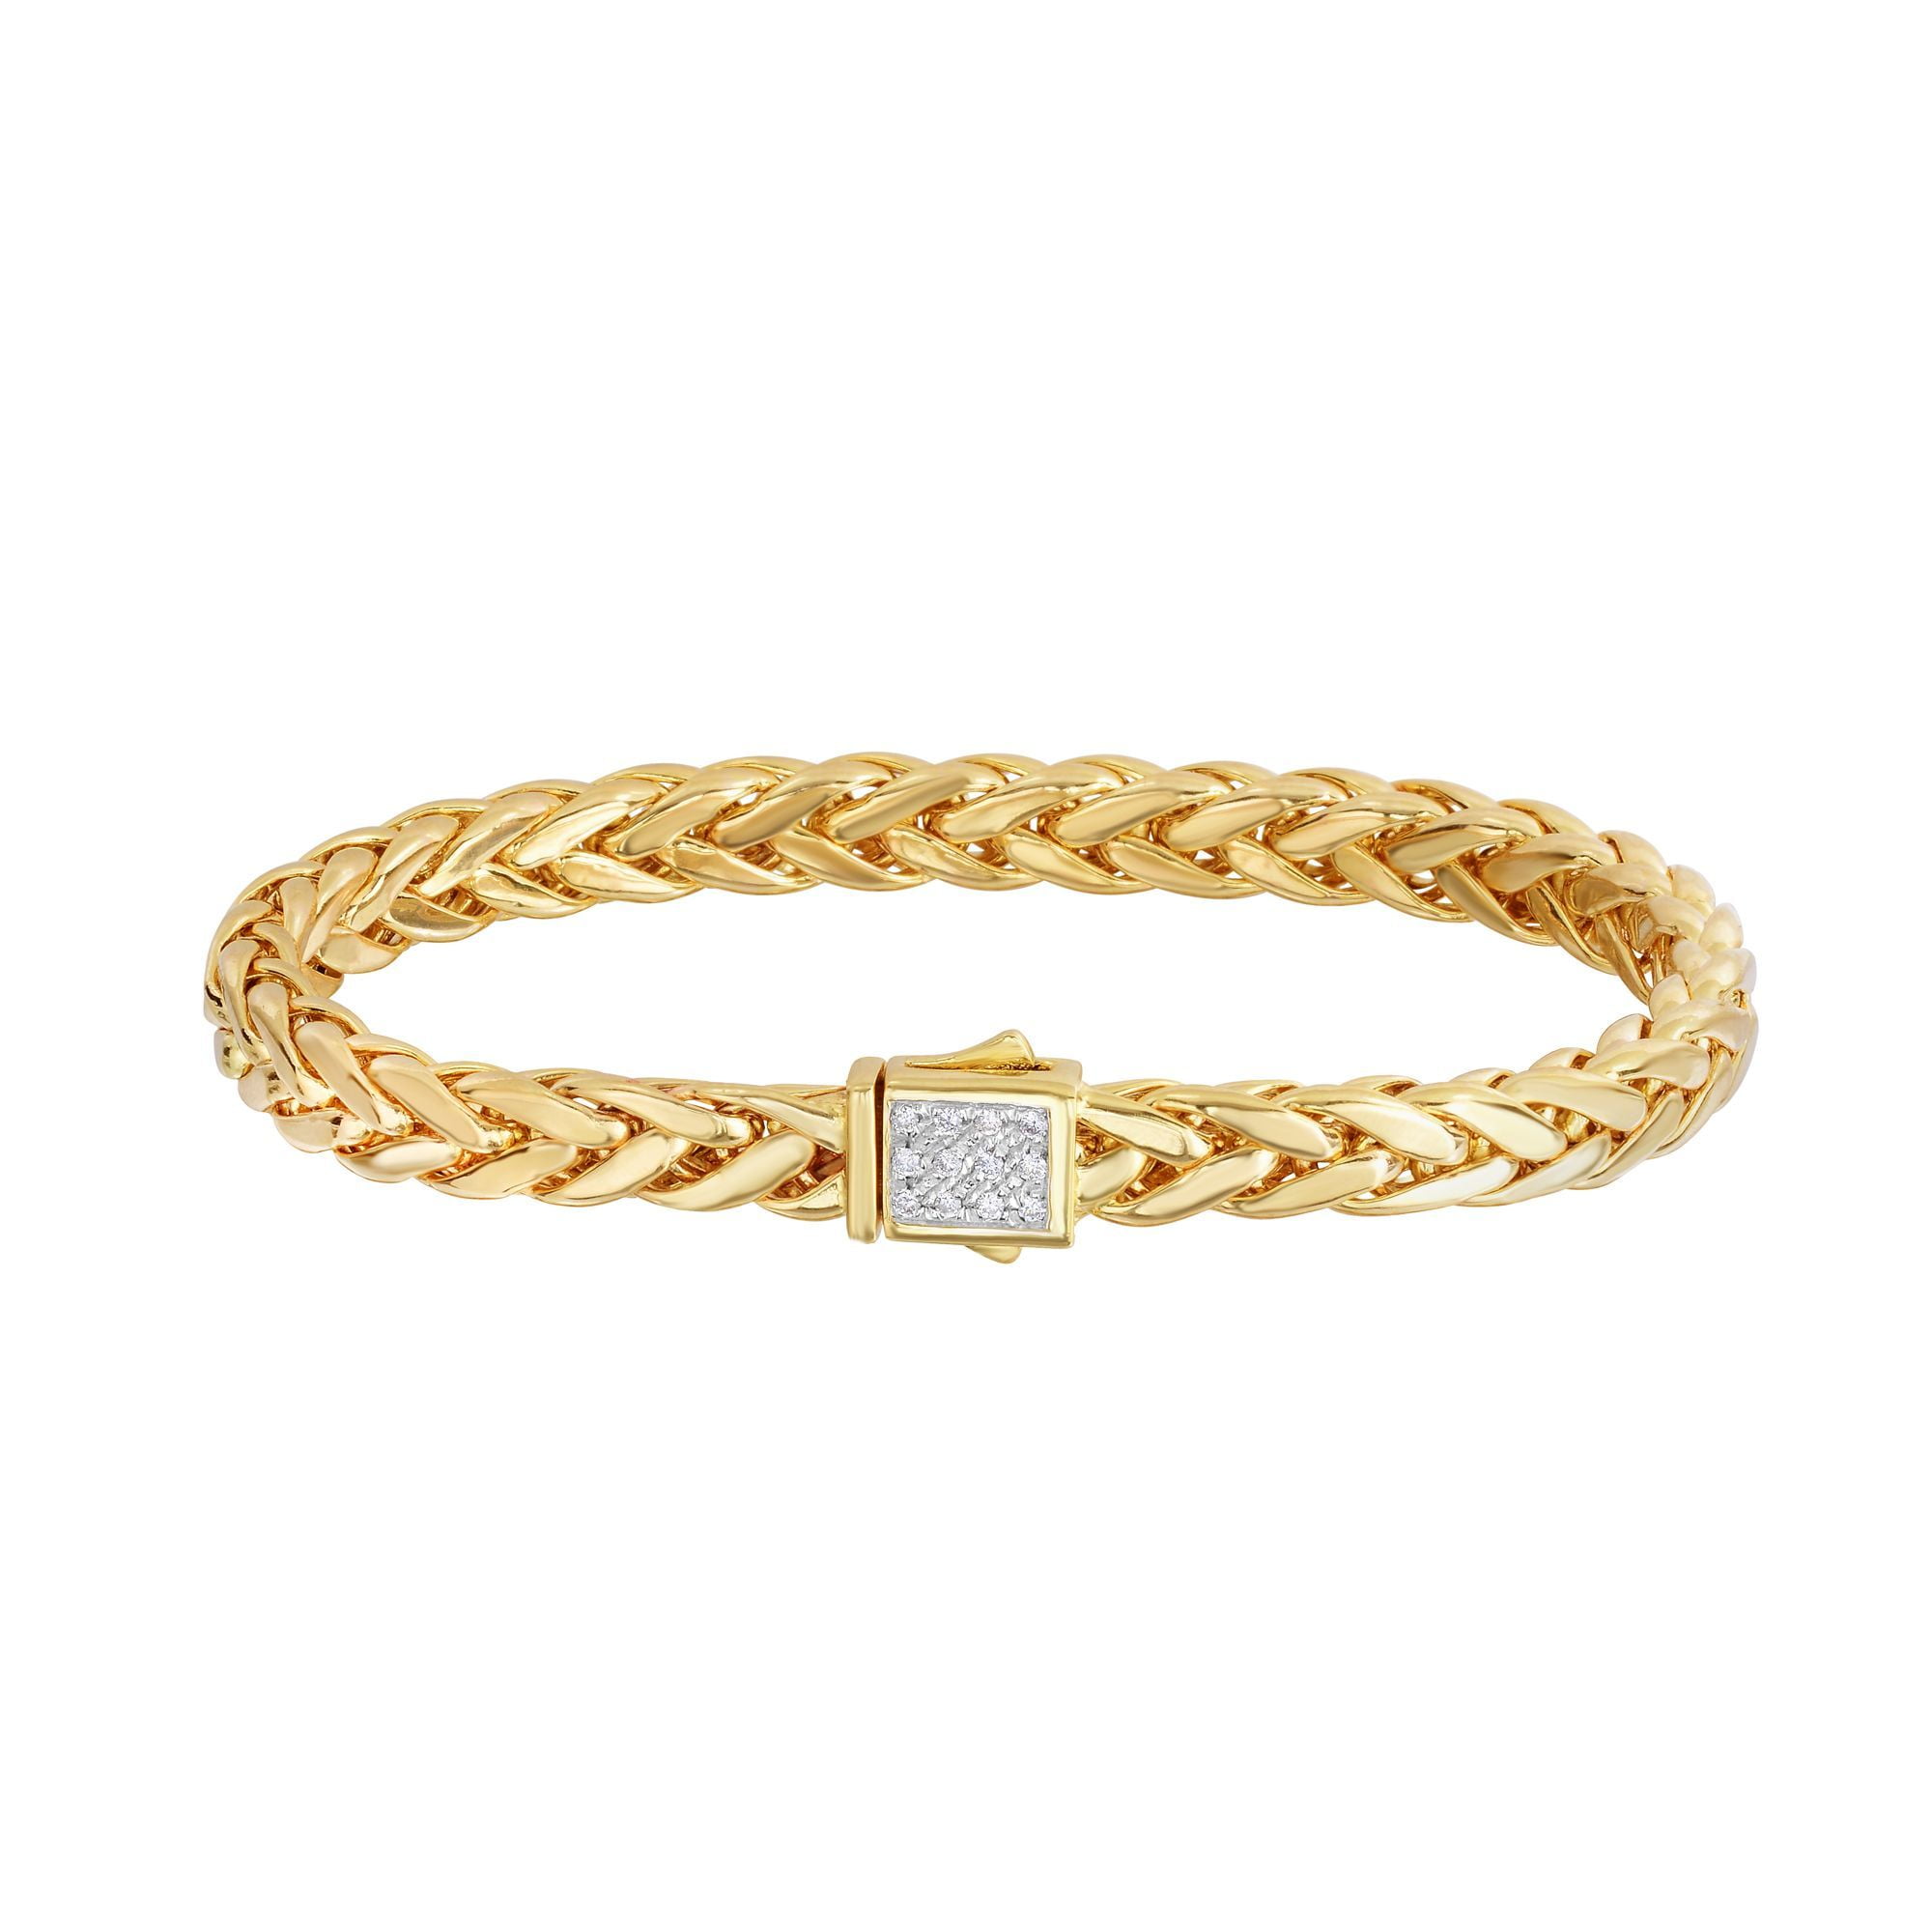 14K Yellow Gold Shiny Fancy Flat Weaved Braided Bracelet 8.25